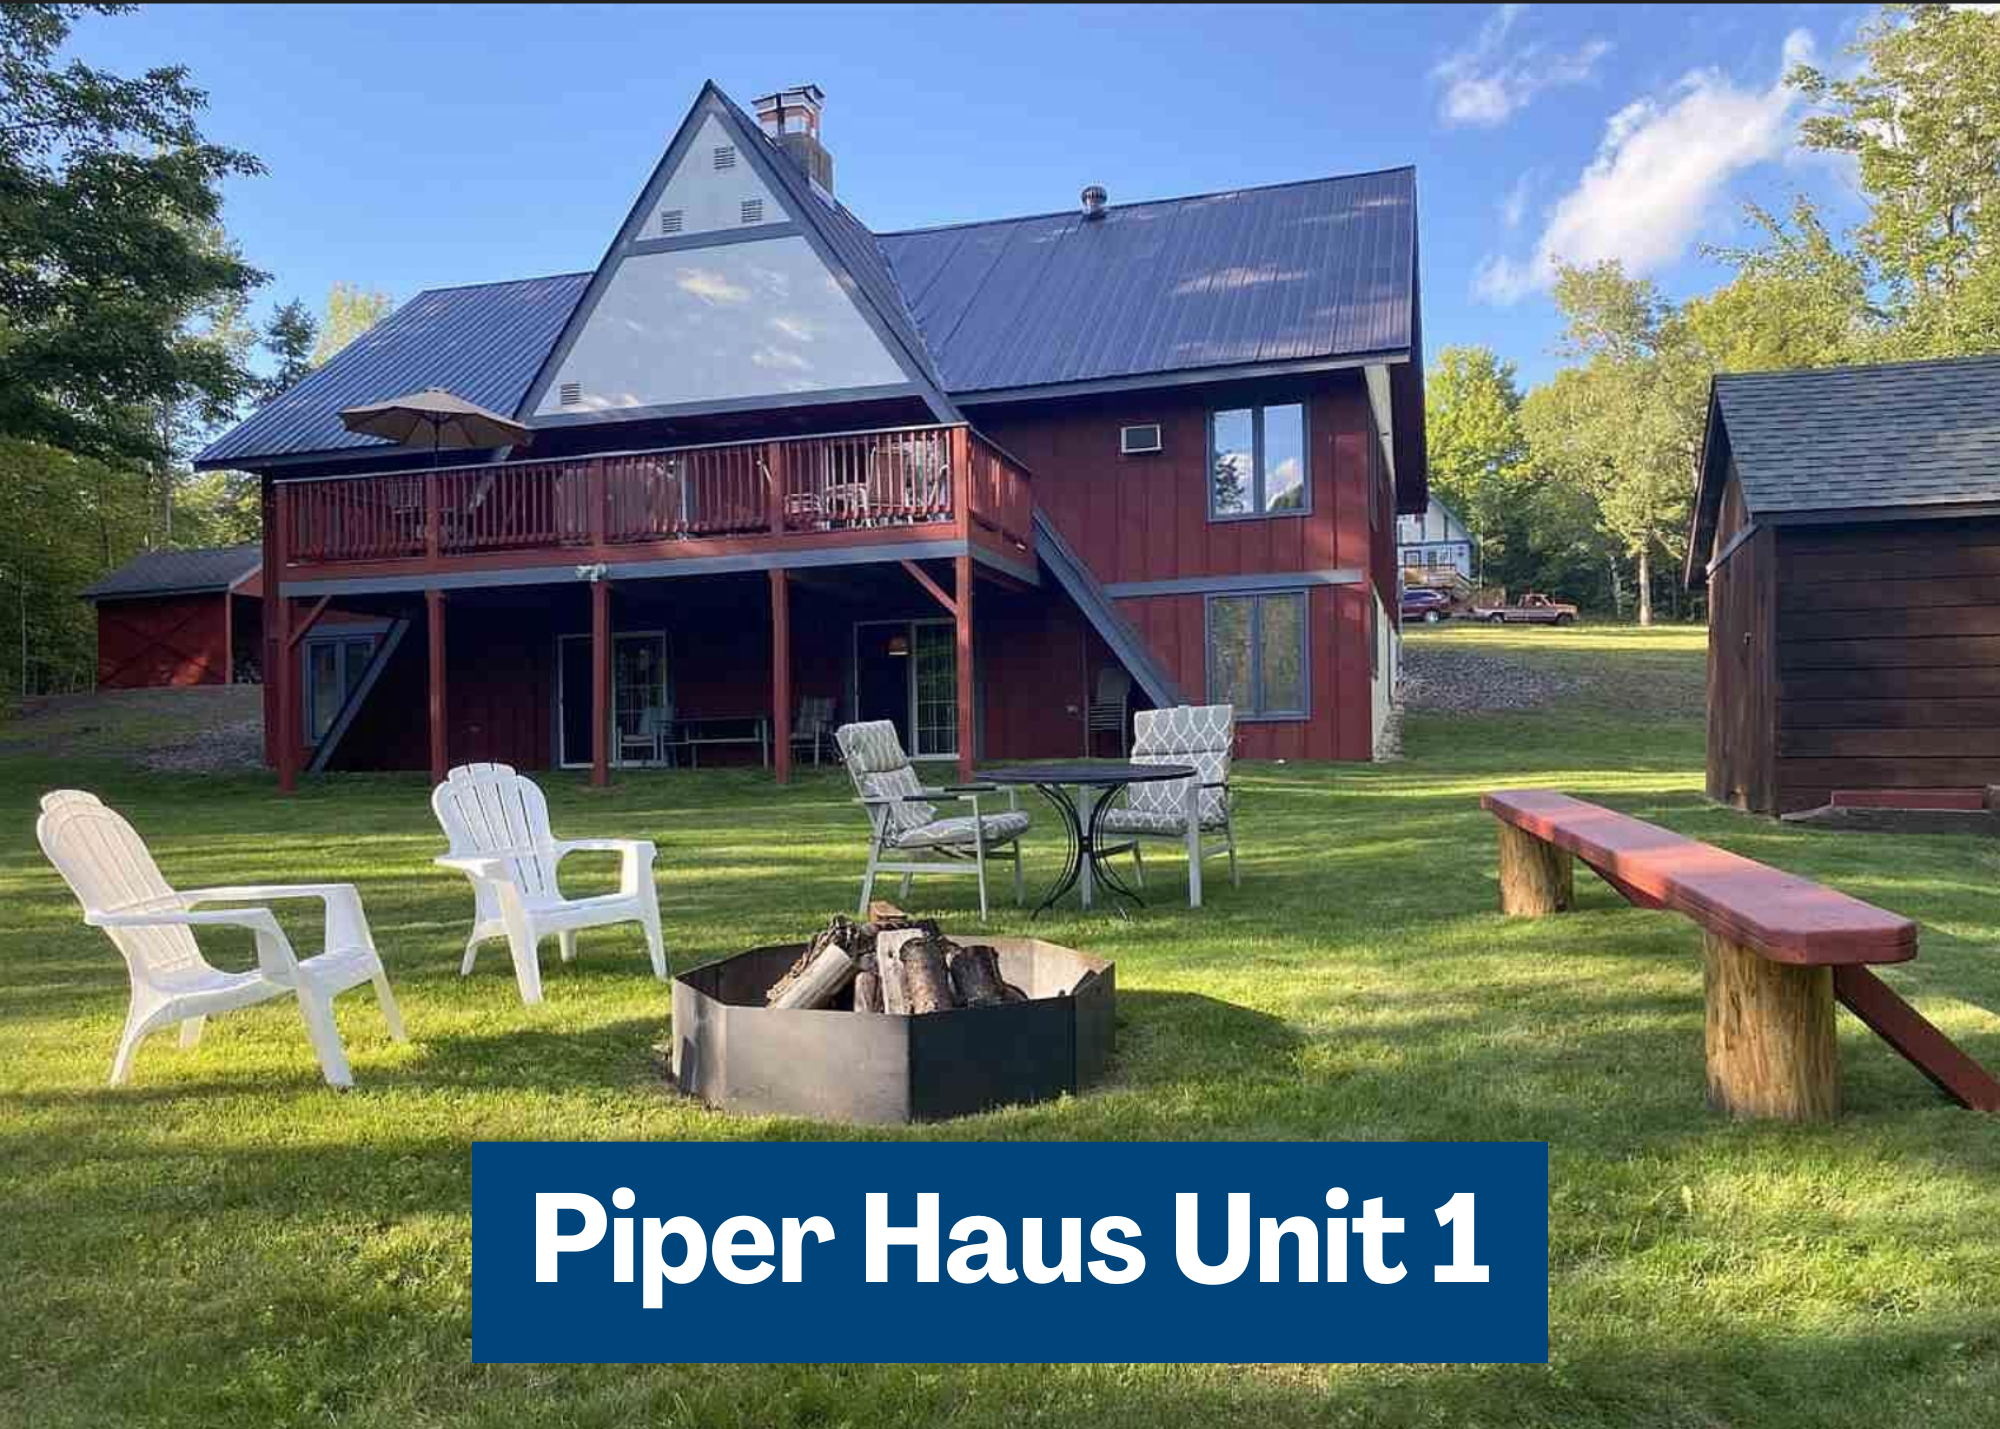 Piper Haus Chalet Unit 1